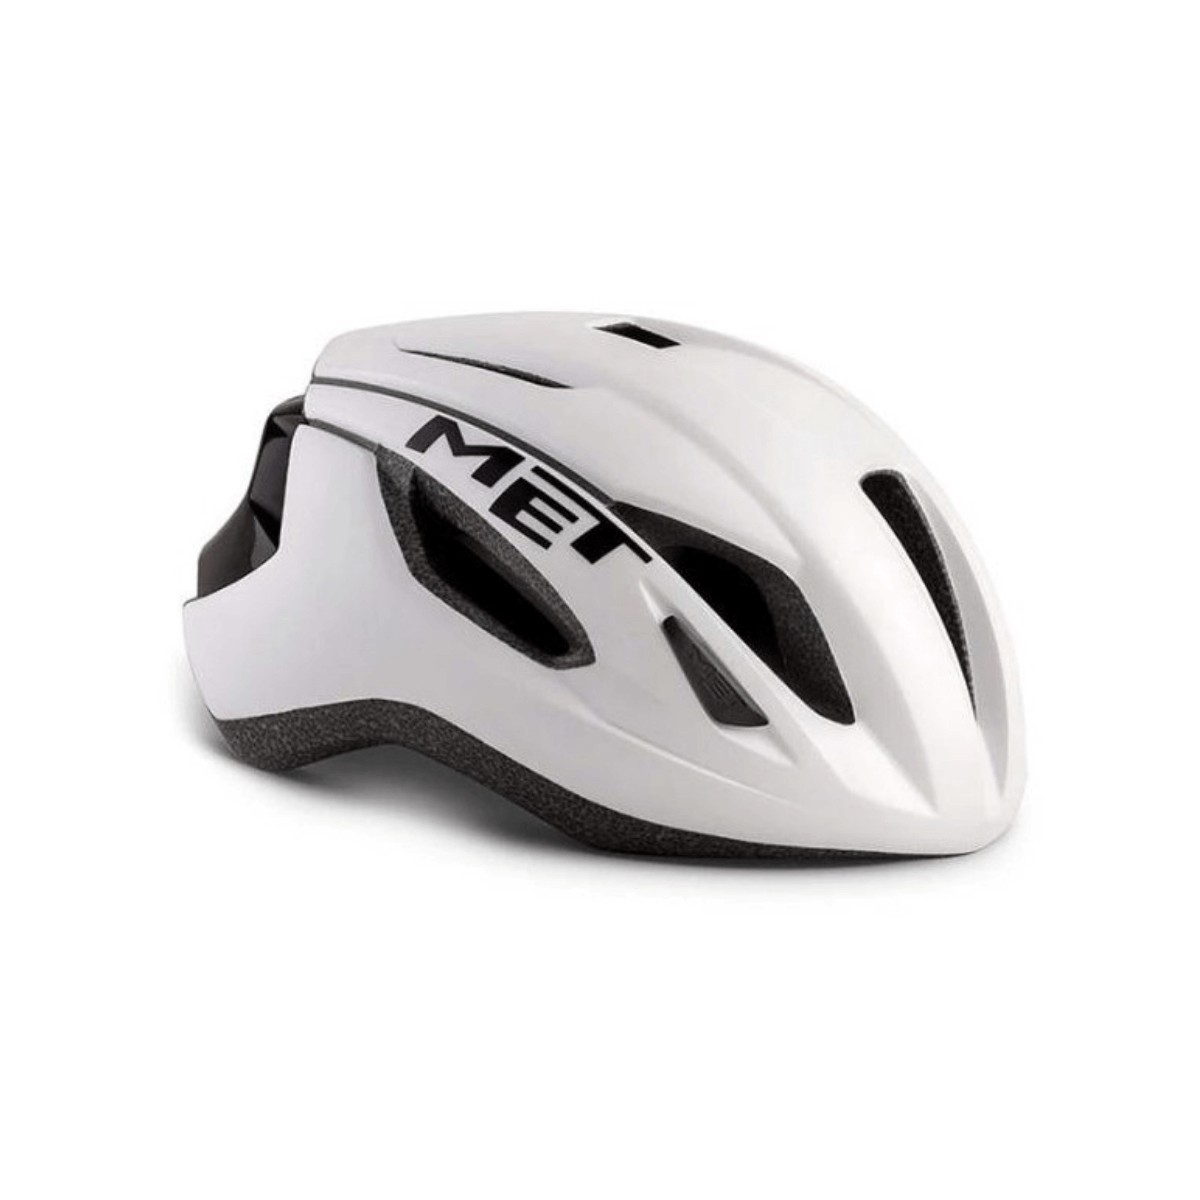 MET Strale Helmet White Black Mate, Size M (56-58 cm)